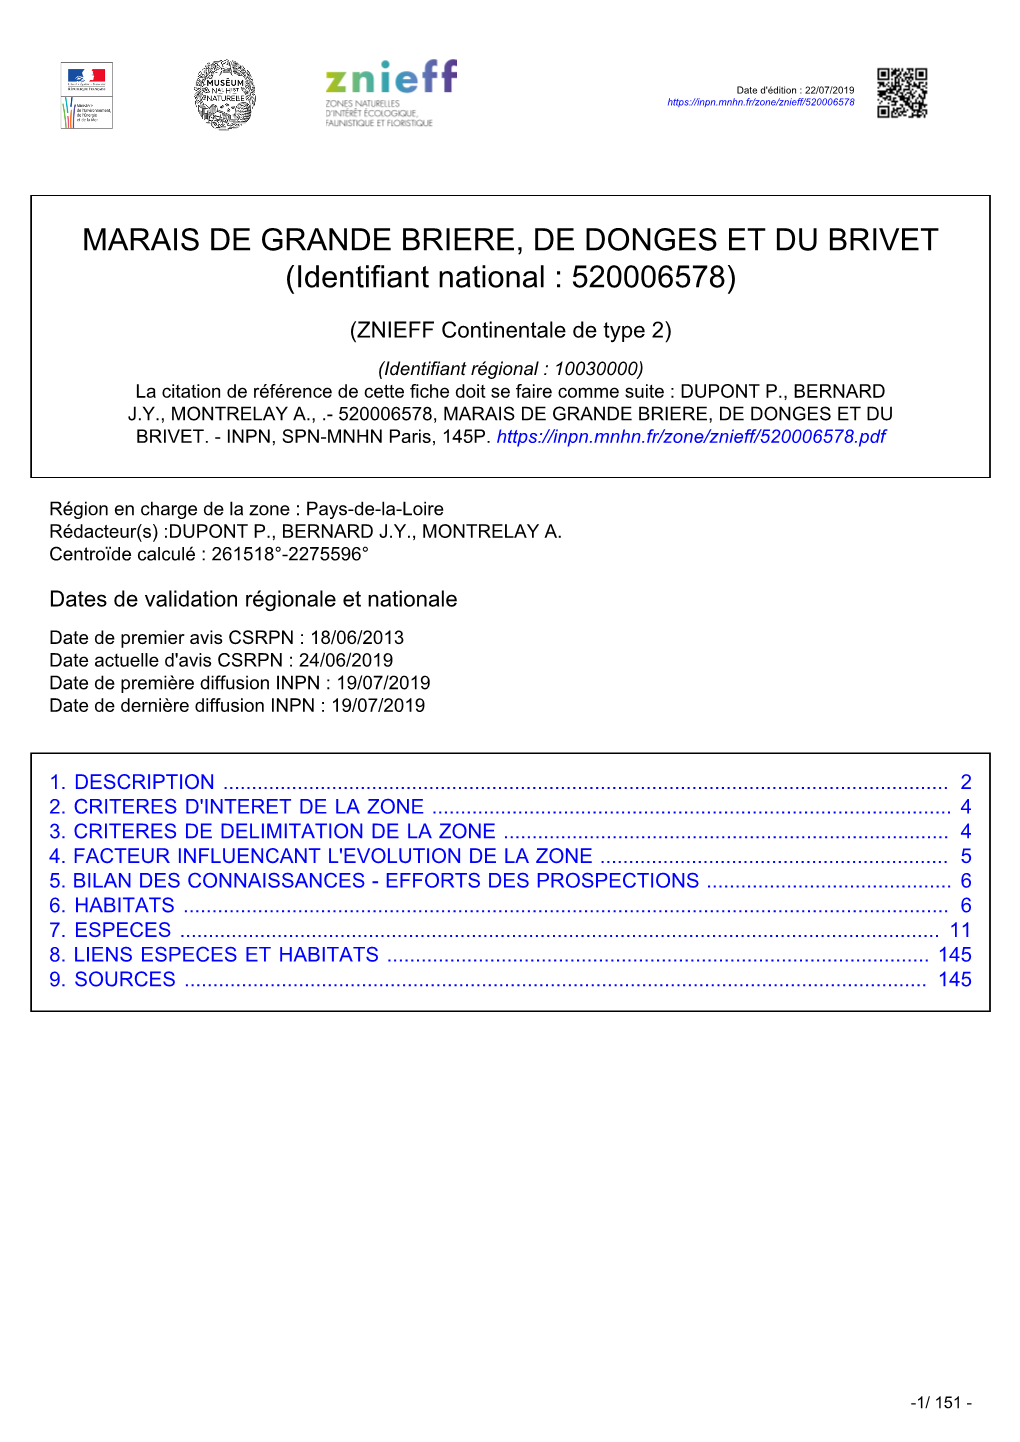 MARAIS DE GRANDE BRIERE, DE DONGES ET DU BRIVET (Identifiant National : 520006578)